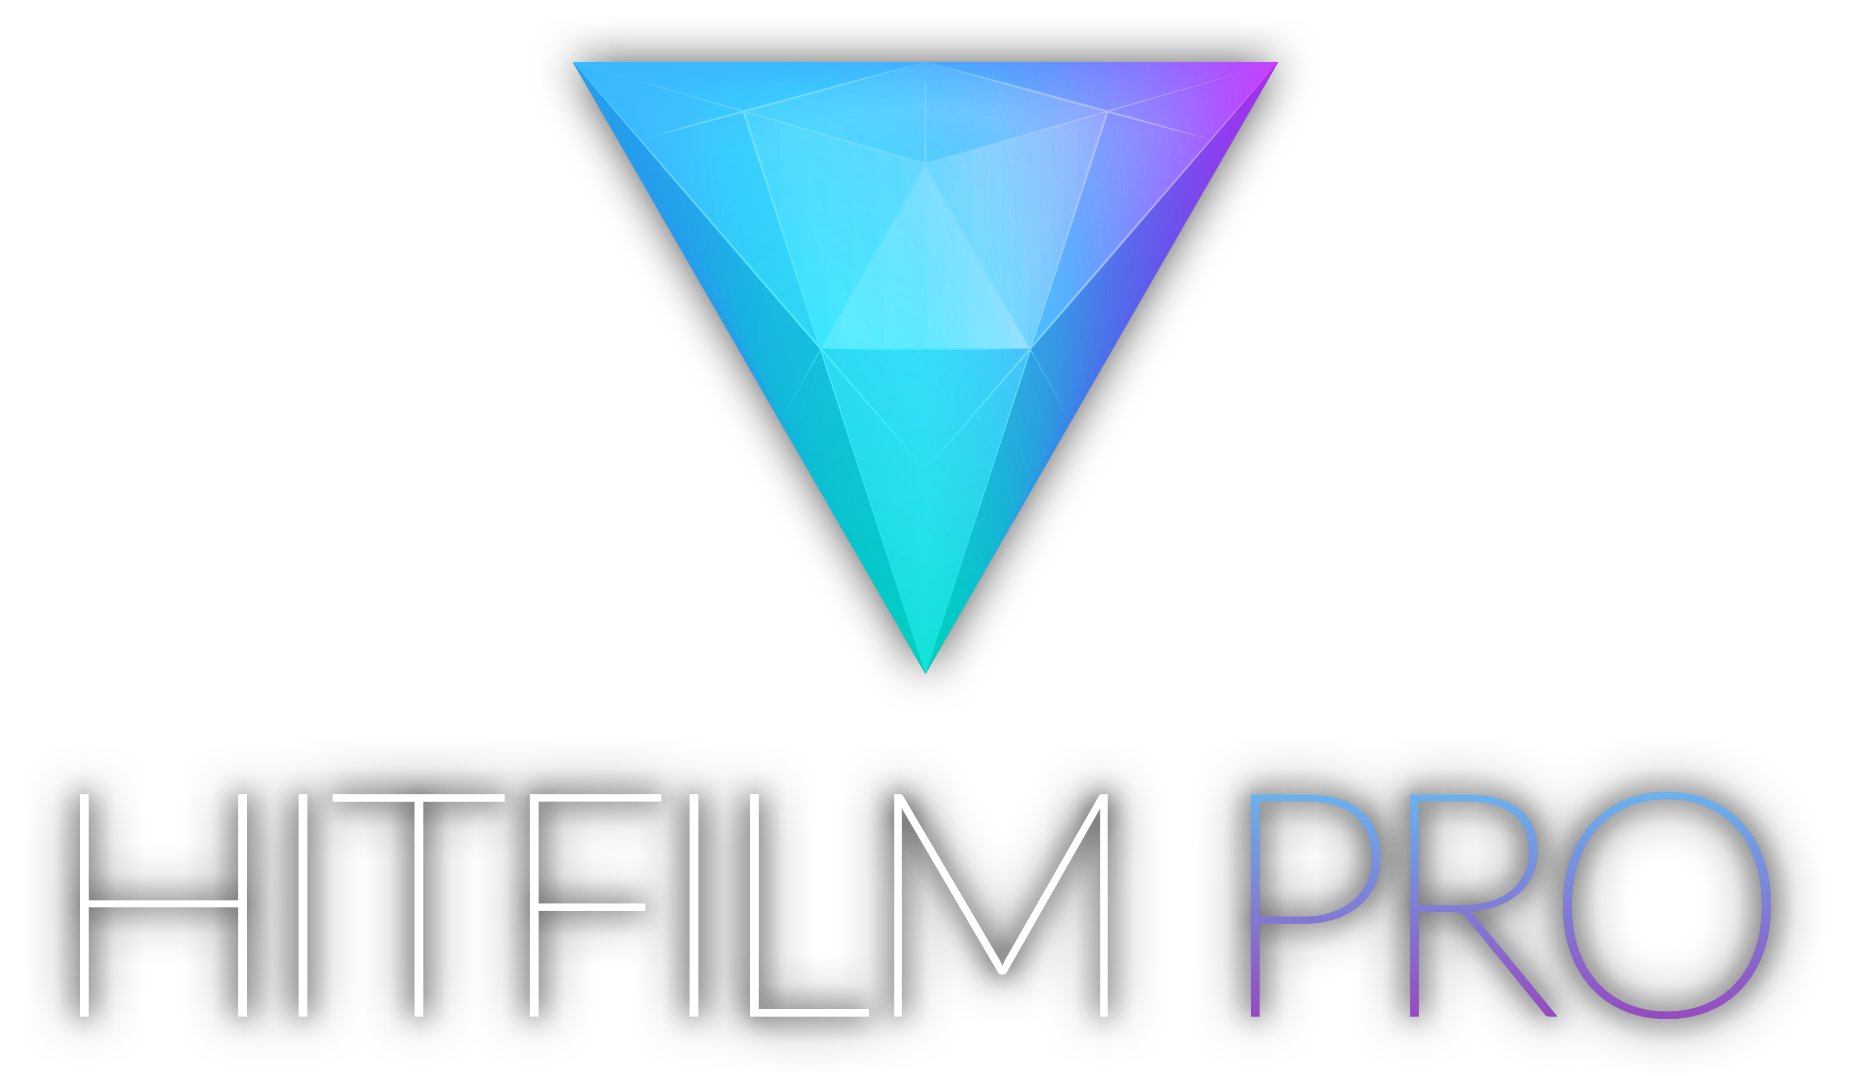 hitfilm-pro-2017-keygen-crack-patch-free-download